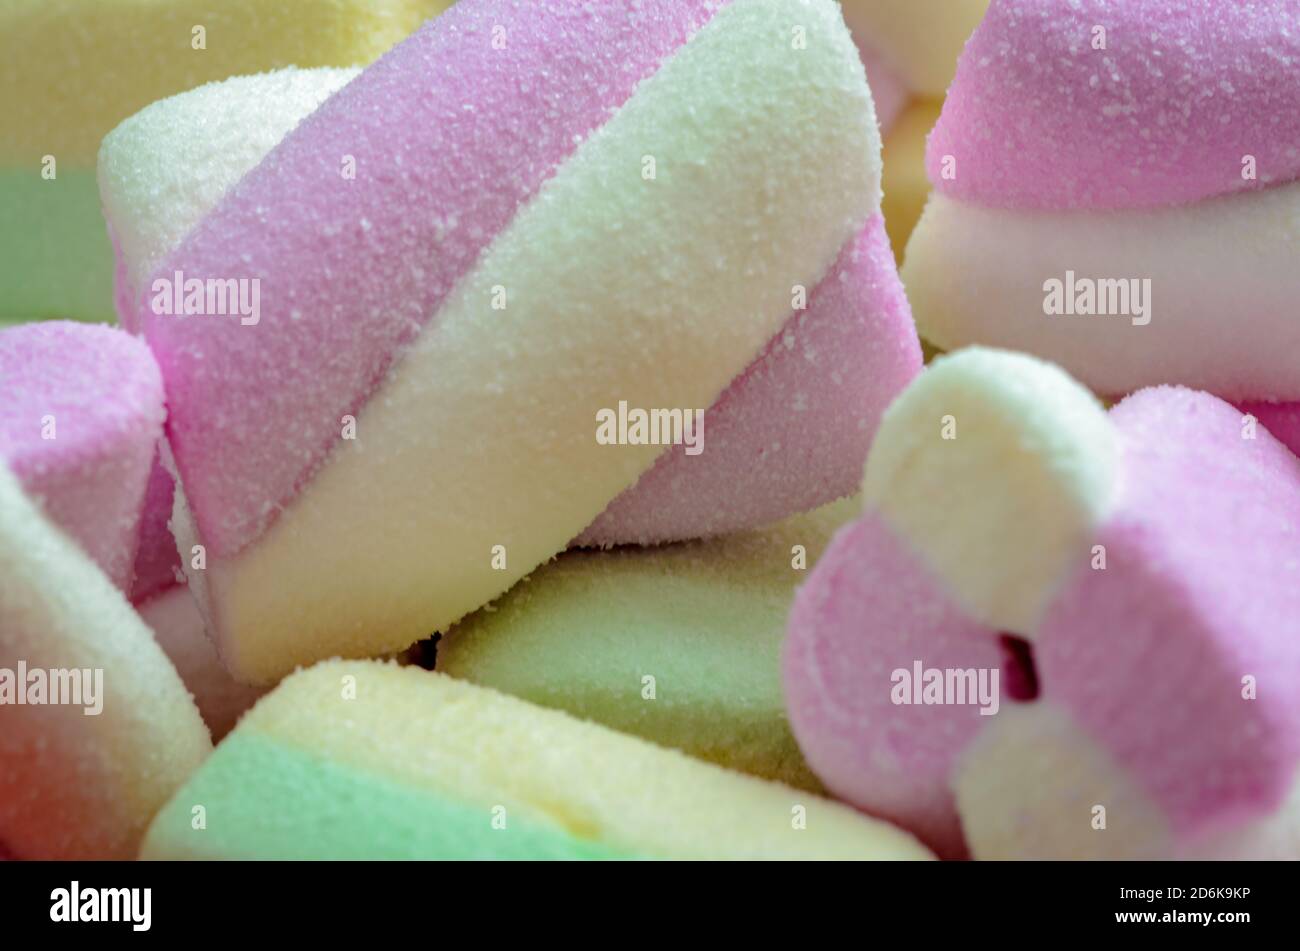 Schöne Hintergrund Marshmallows - Rosa, grün & weiß Farben - Makro-Aufnahme Nahaufnahme Stockfoto